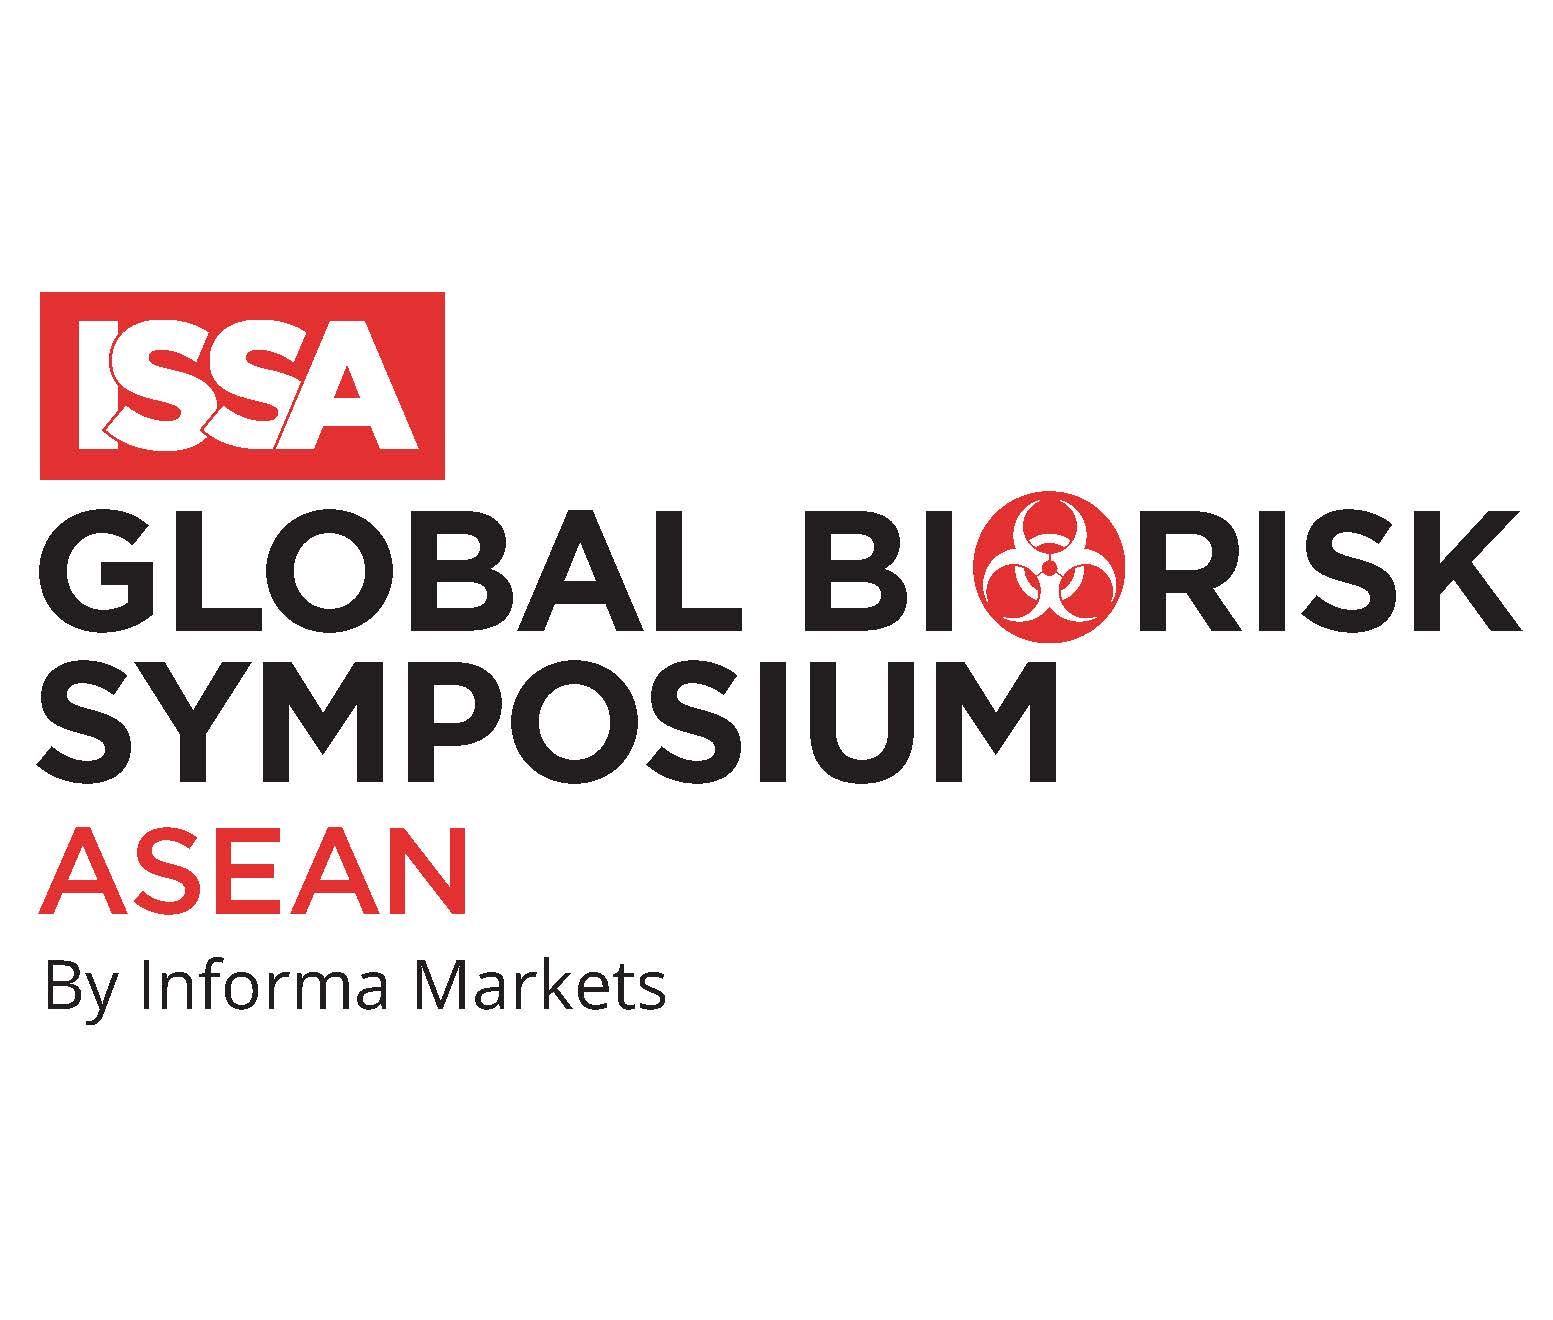 ISSA Global Biorisk Symposium ASEAN